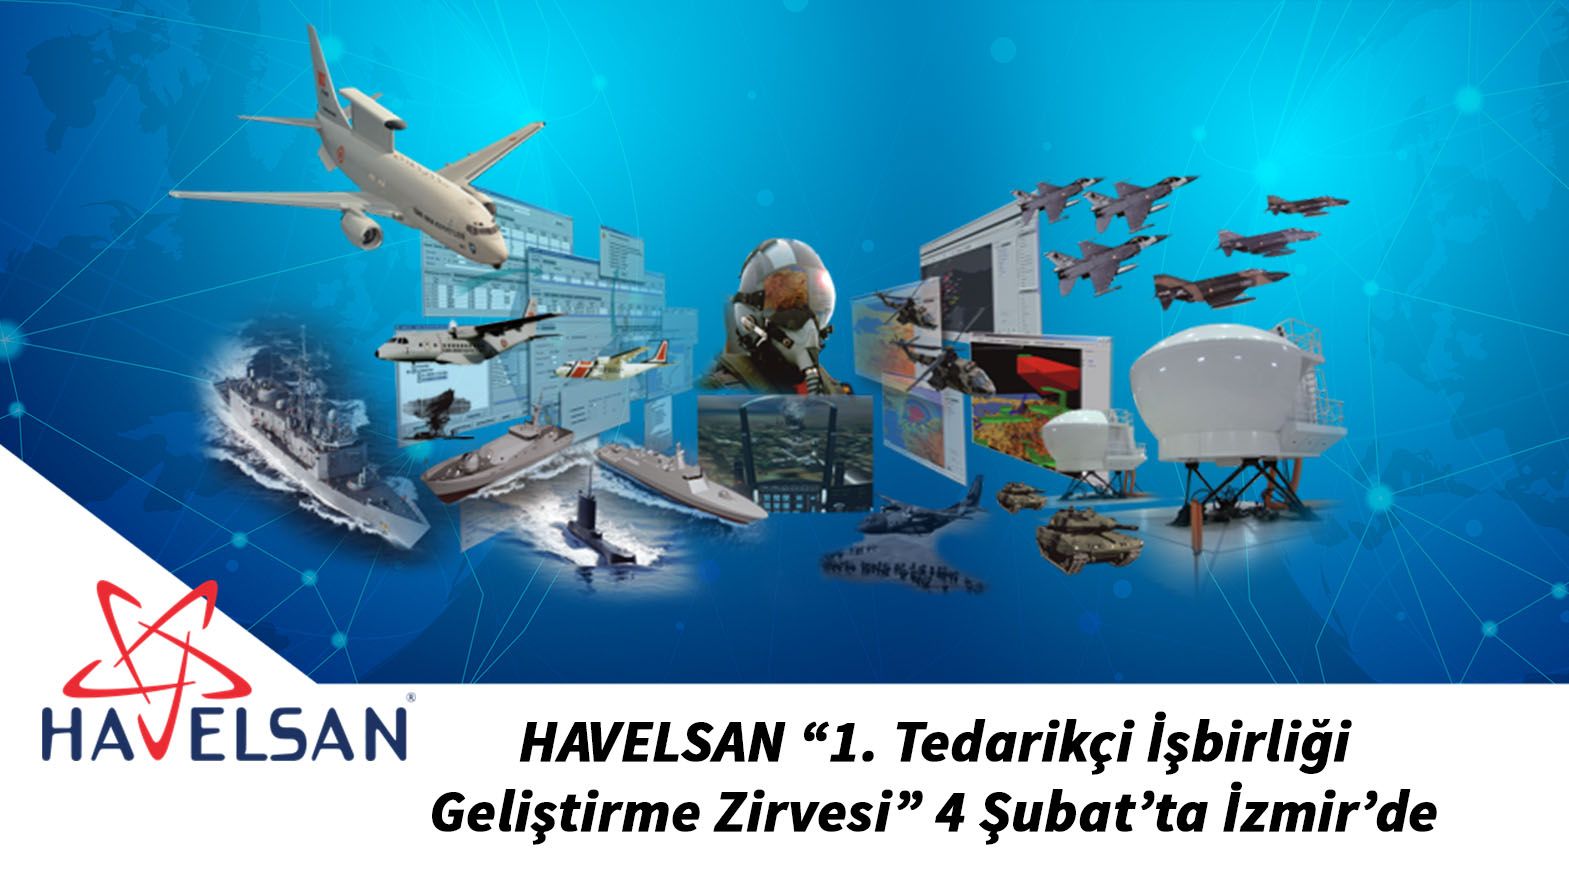 HAVELSAN “1. Tedarikçi İşbirliği Geliştirme Zirvesi” 4 Şubat’ta İzmir’de